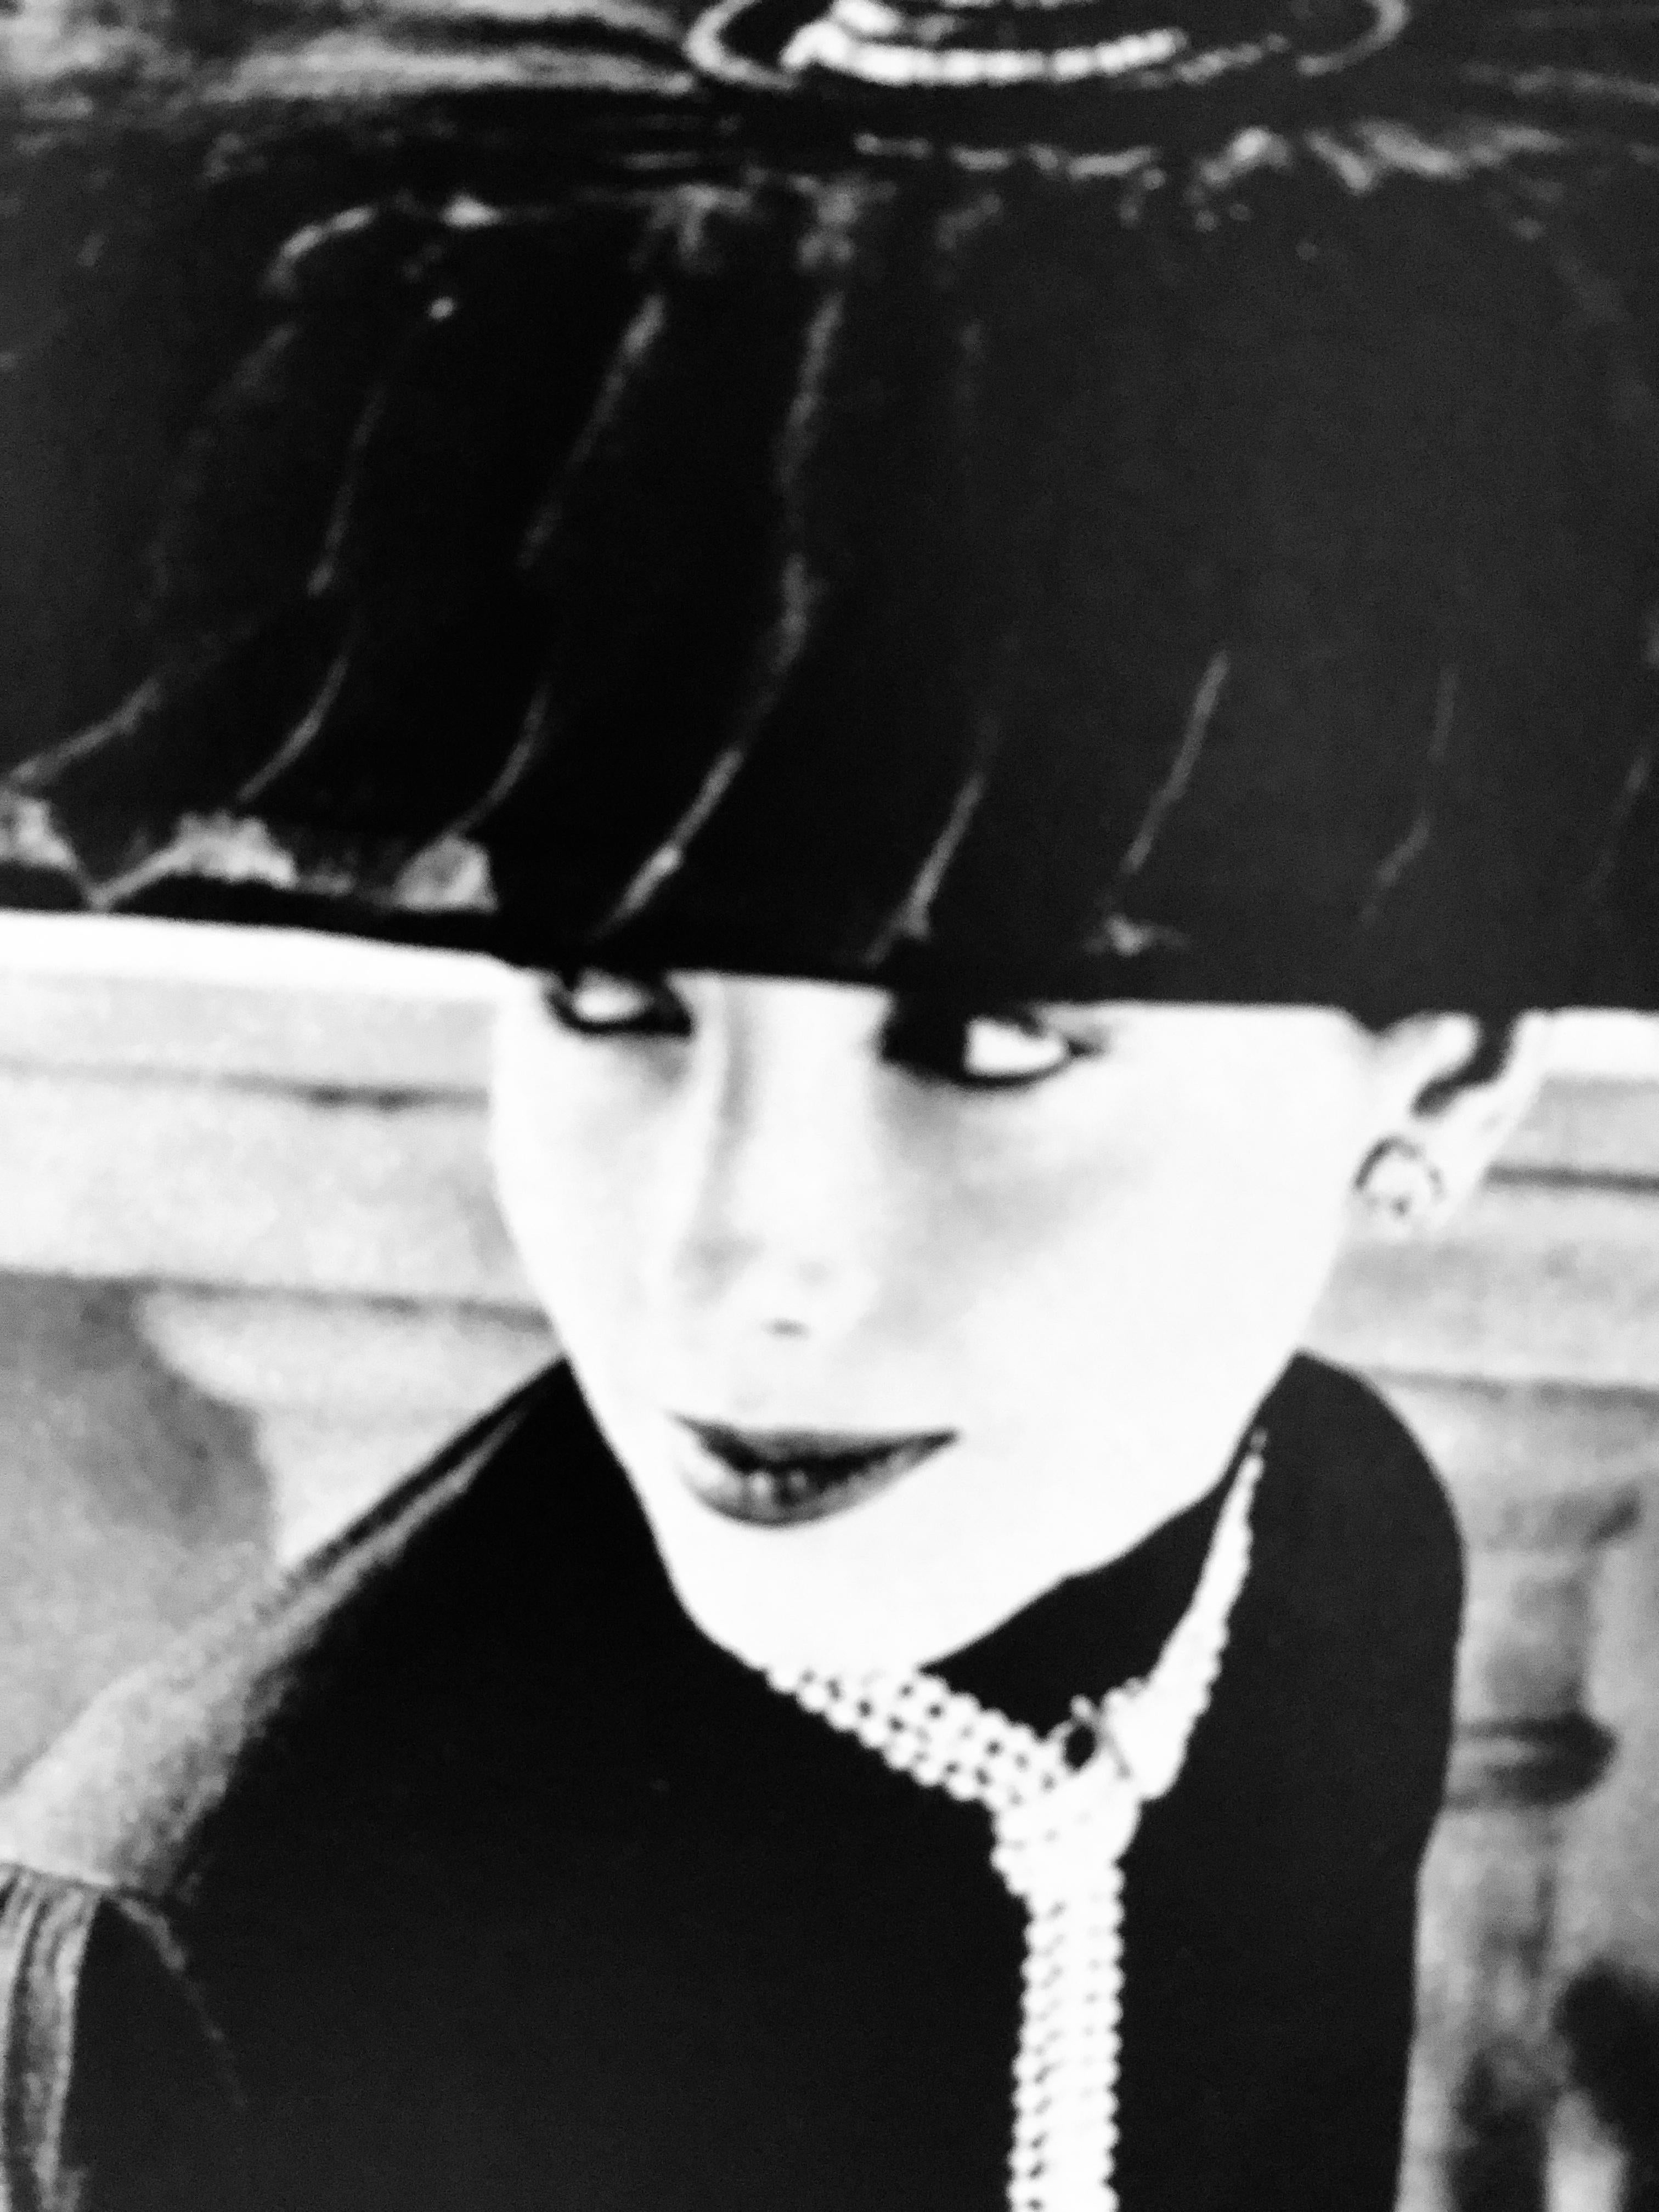 20th Century Black & White Photo Norman Parkinson “Legroux Soeurs Hat” 1952 Sheet-Fed Gravure For Sale